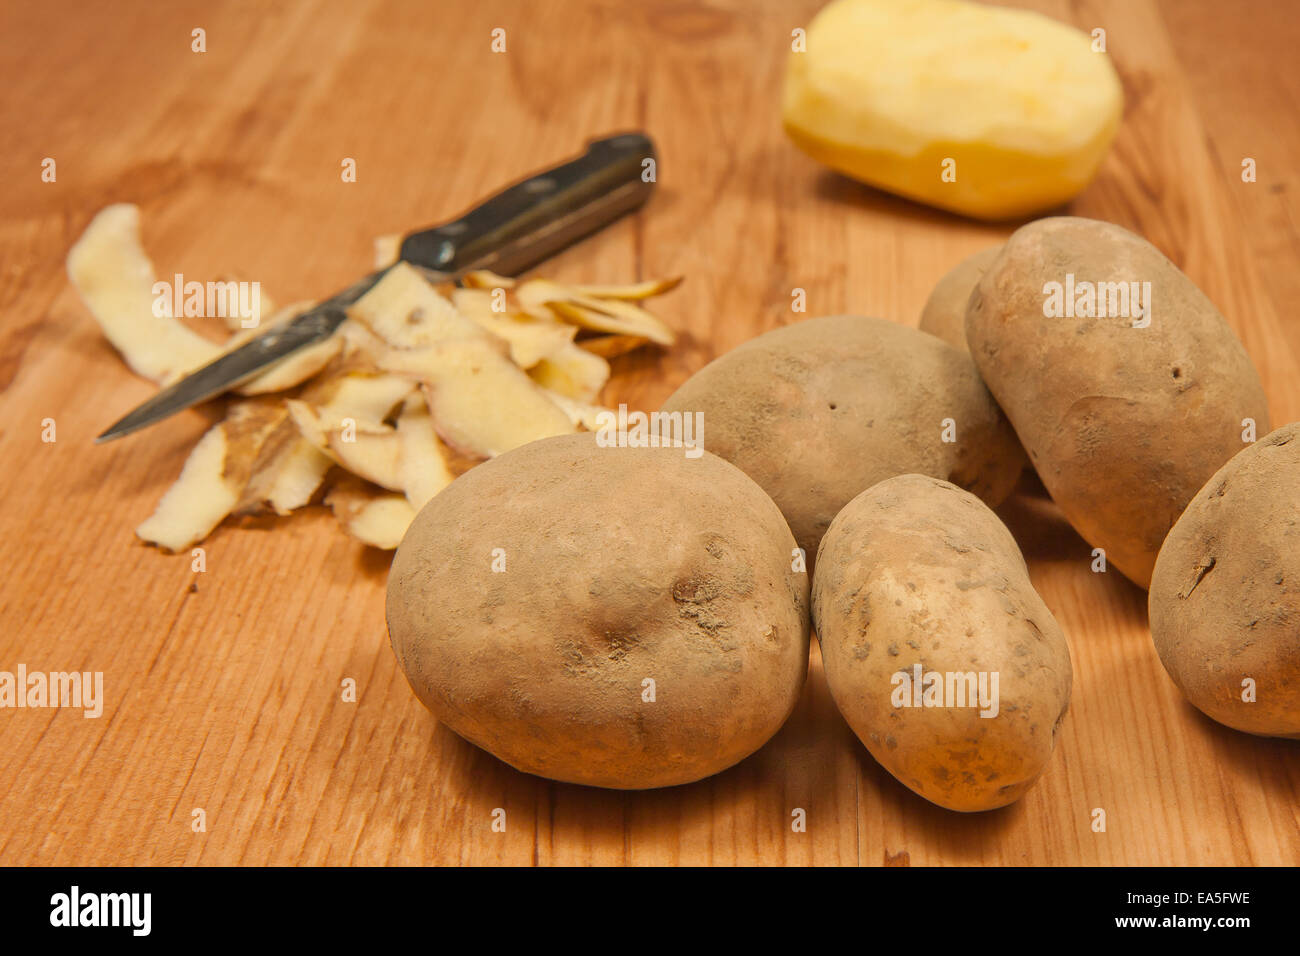 White peeled potatos. Potato peelings Stock Photo